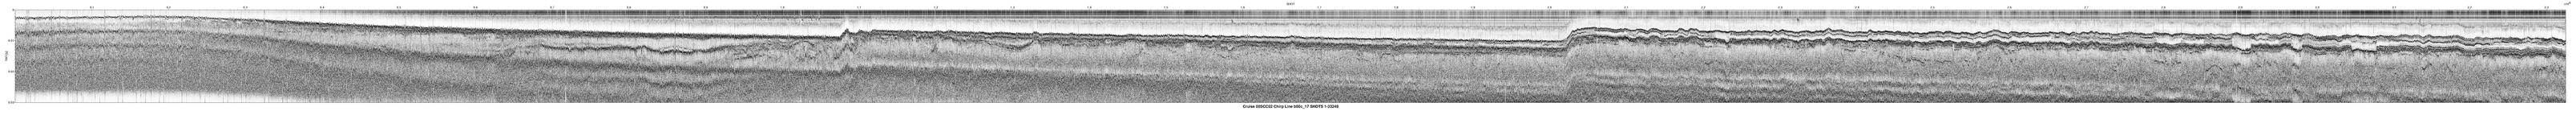 00SCC02 b00c_17 seismic profile image